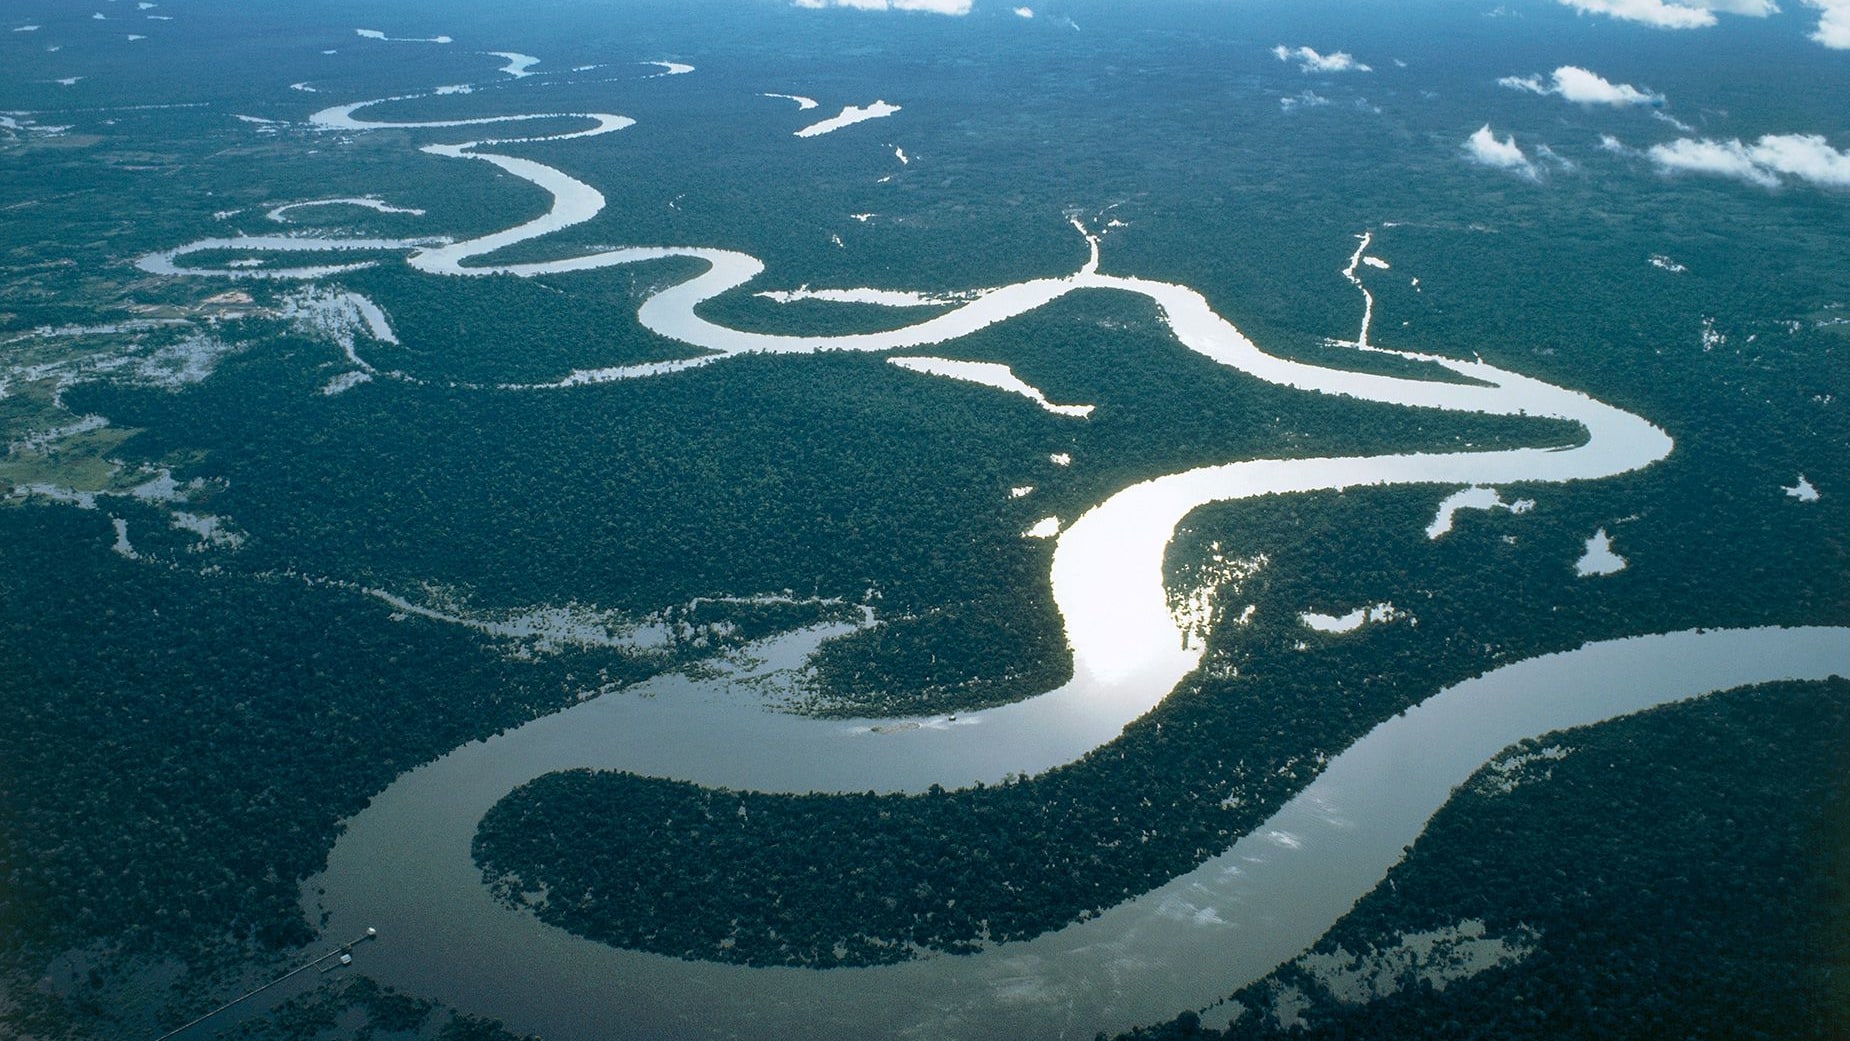 هل مكانة النيل في خطر؟ رحلة استكشافية تهدف لتسوية الجدل بشأن أطول نهر بالعالم